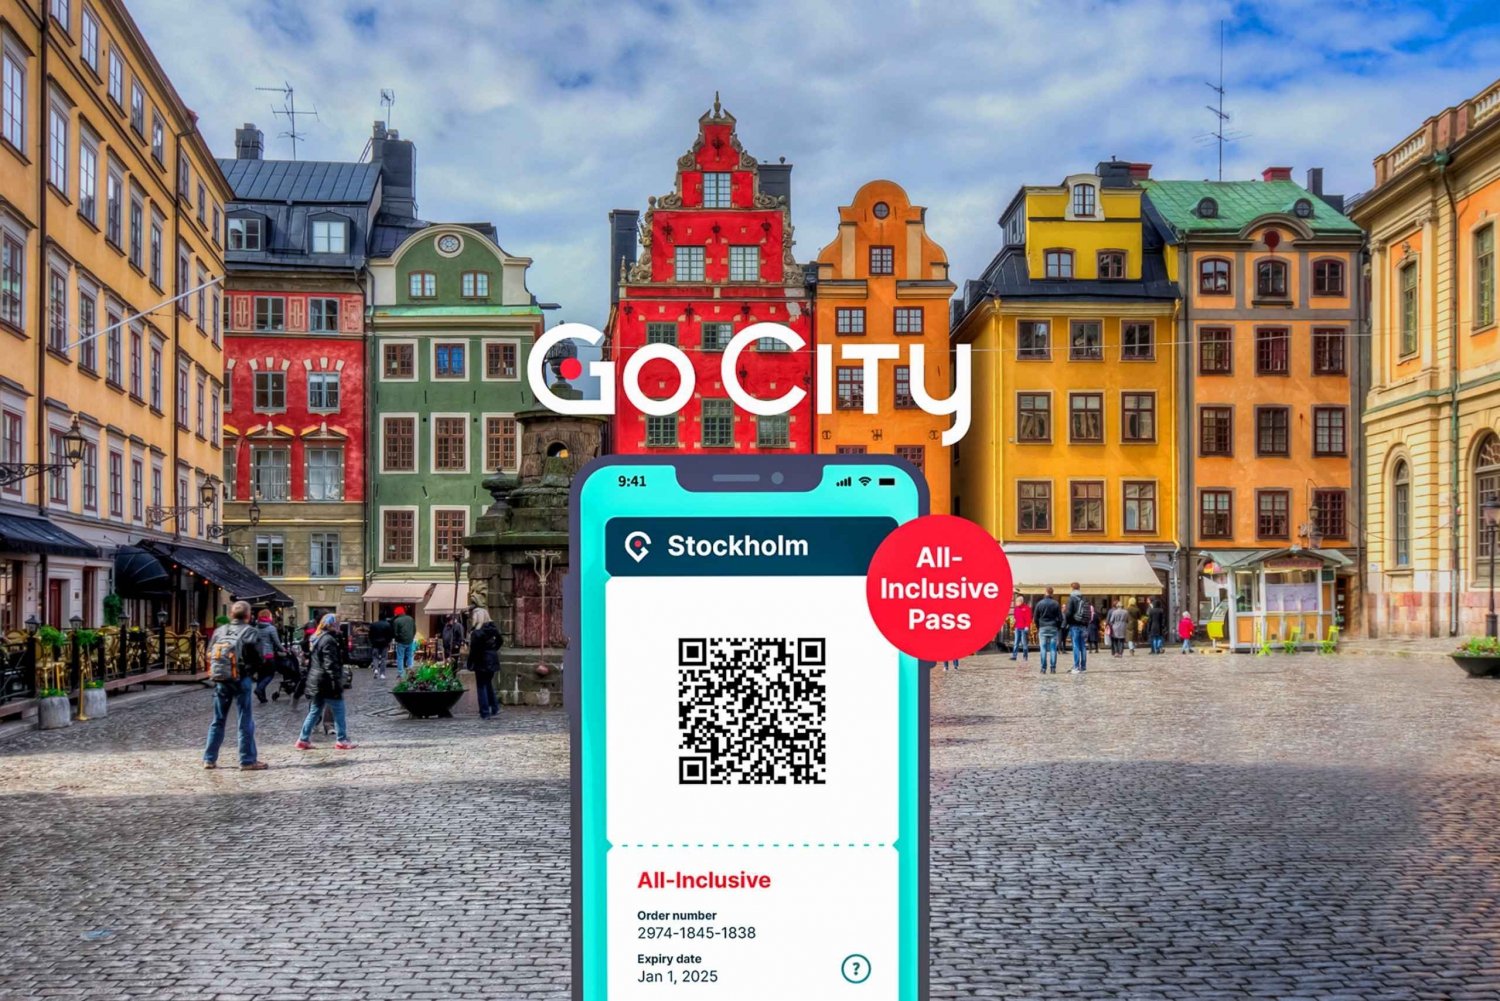 Stockholm: All-inclusive-pas med billetter til 50+ attraktioner